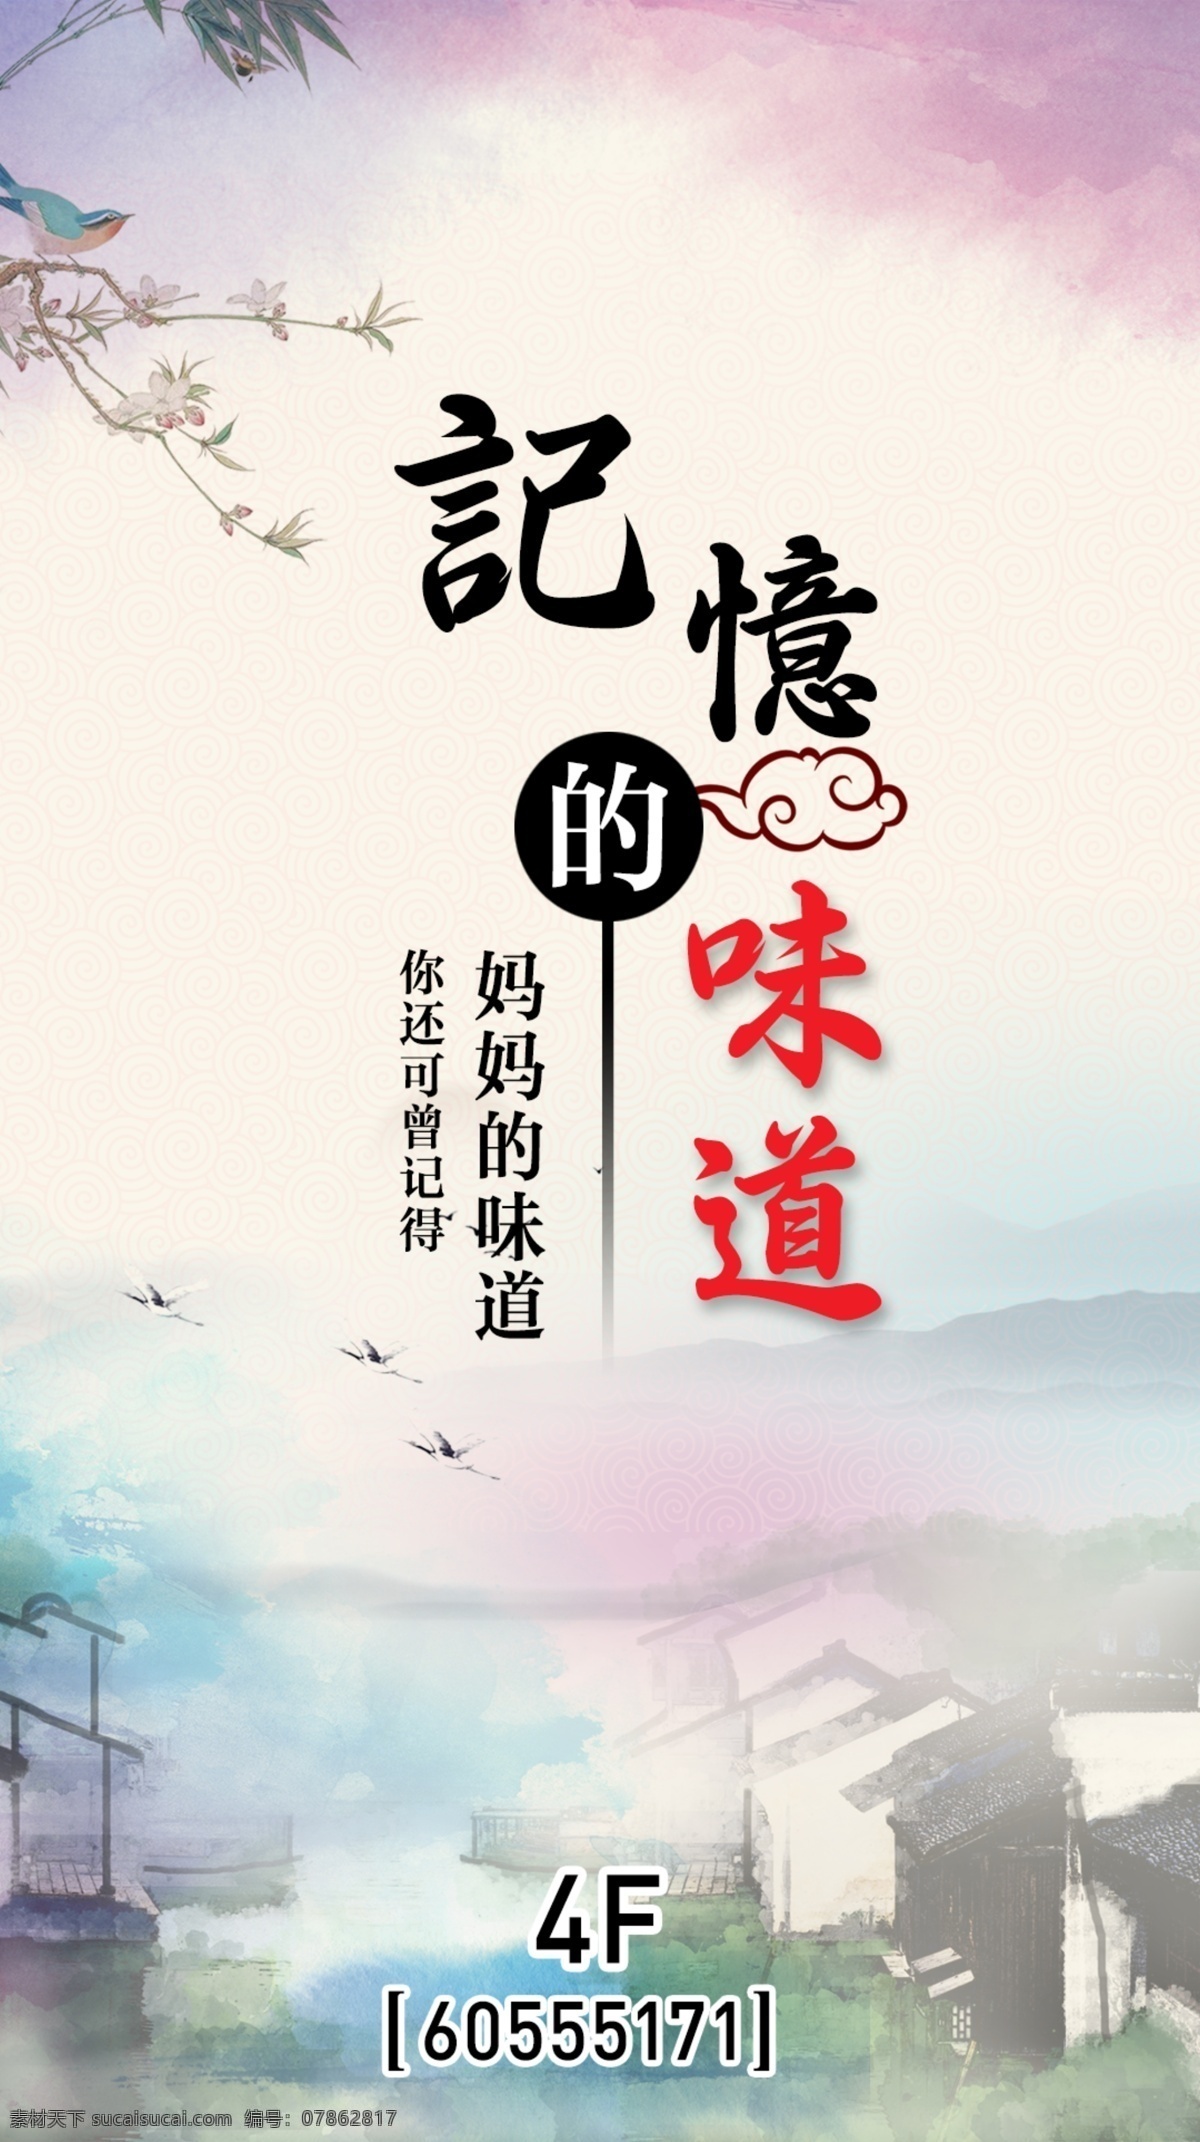 记忆的味道 妈妈的味道 江南风 水墨画 饭店海报 中国风海报 餐厅海报设计